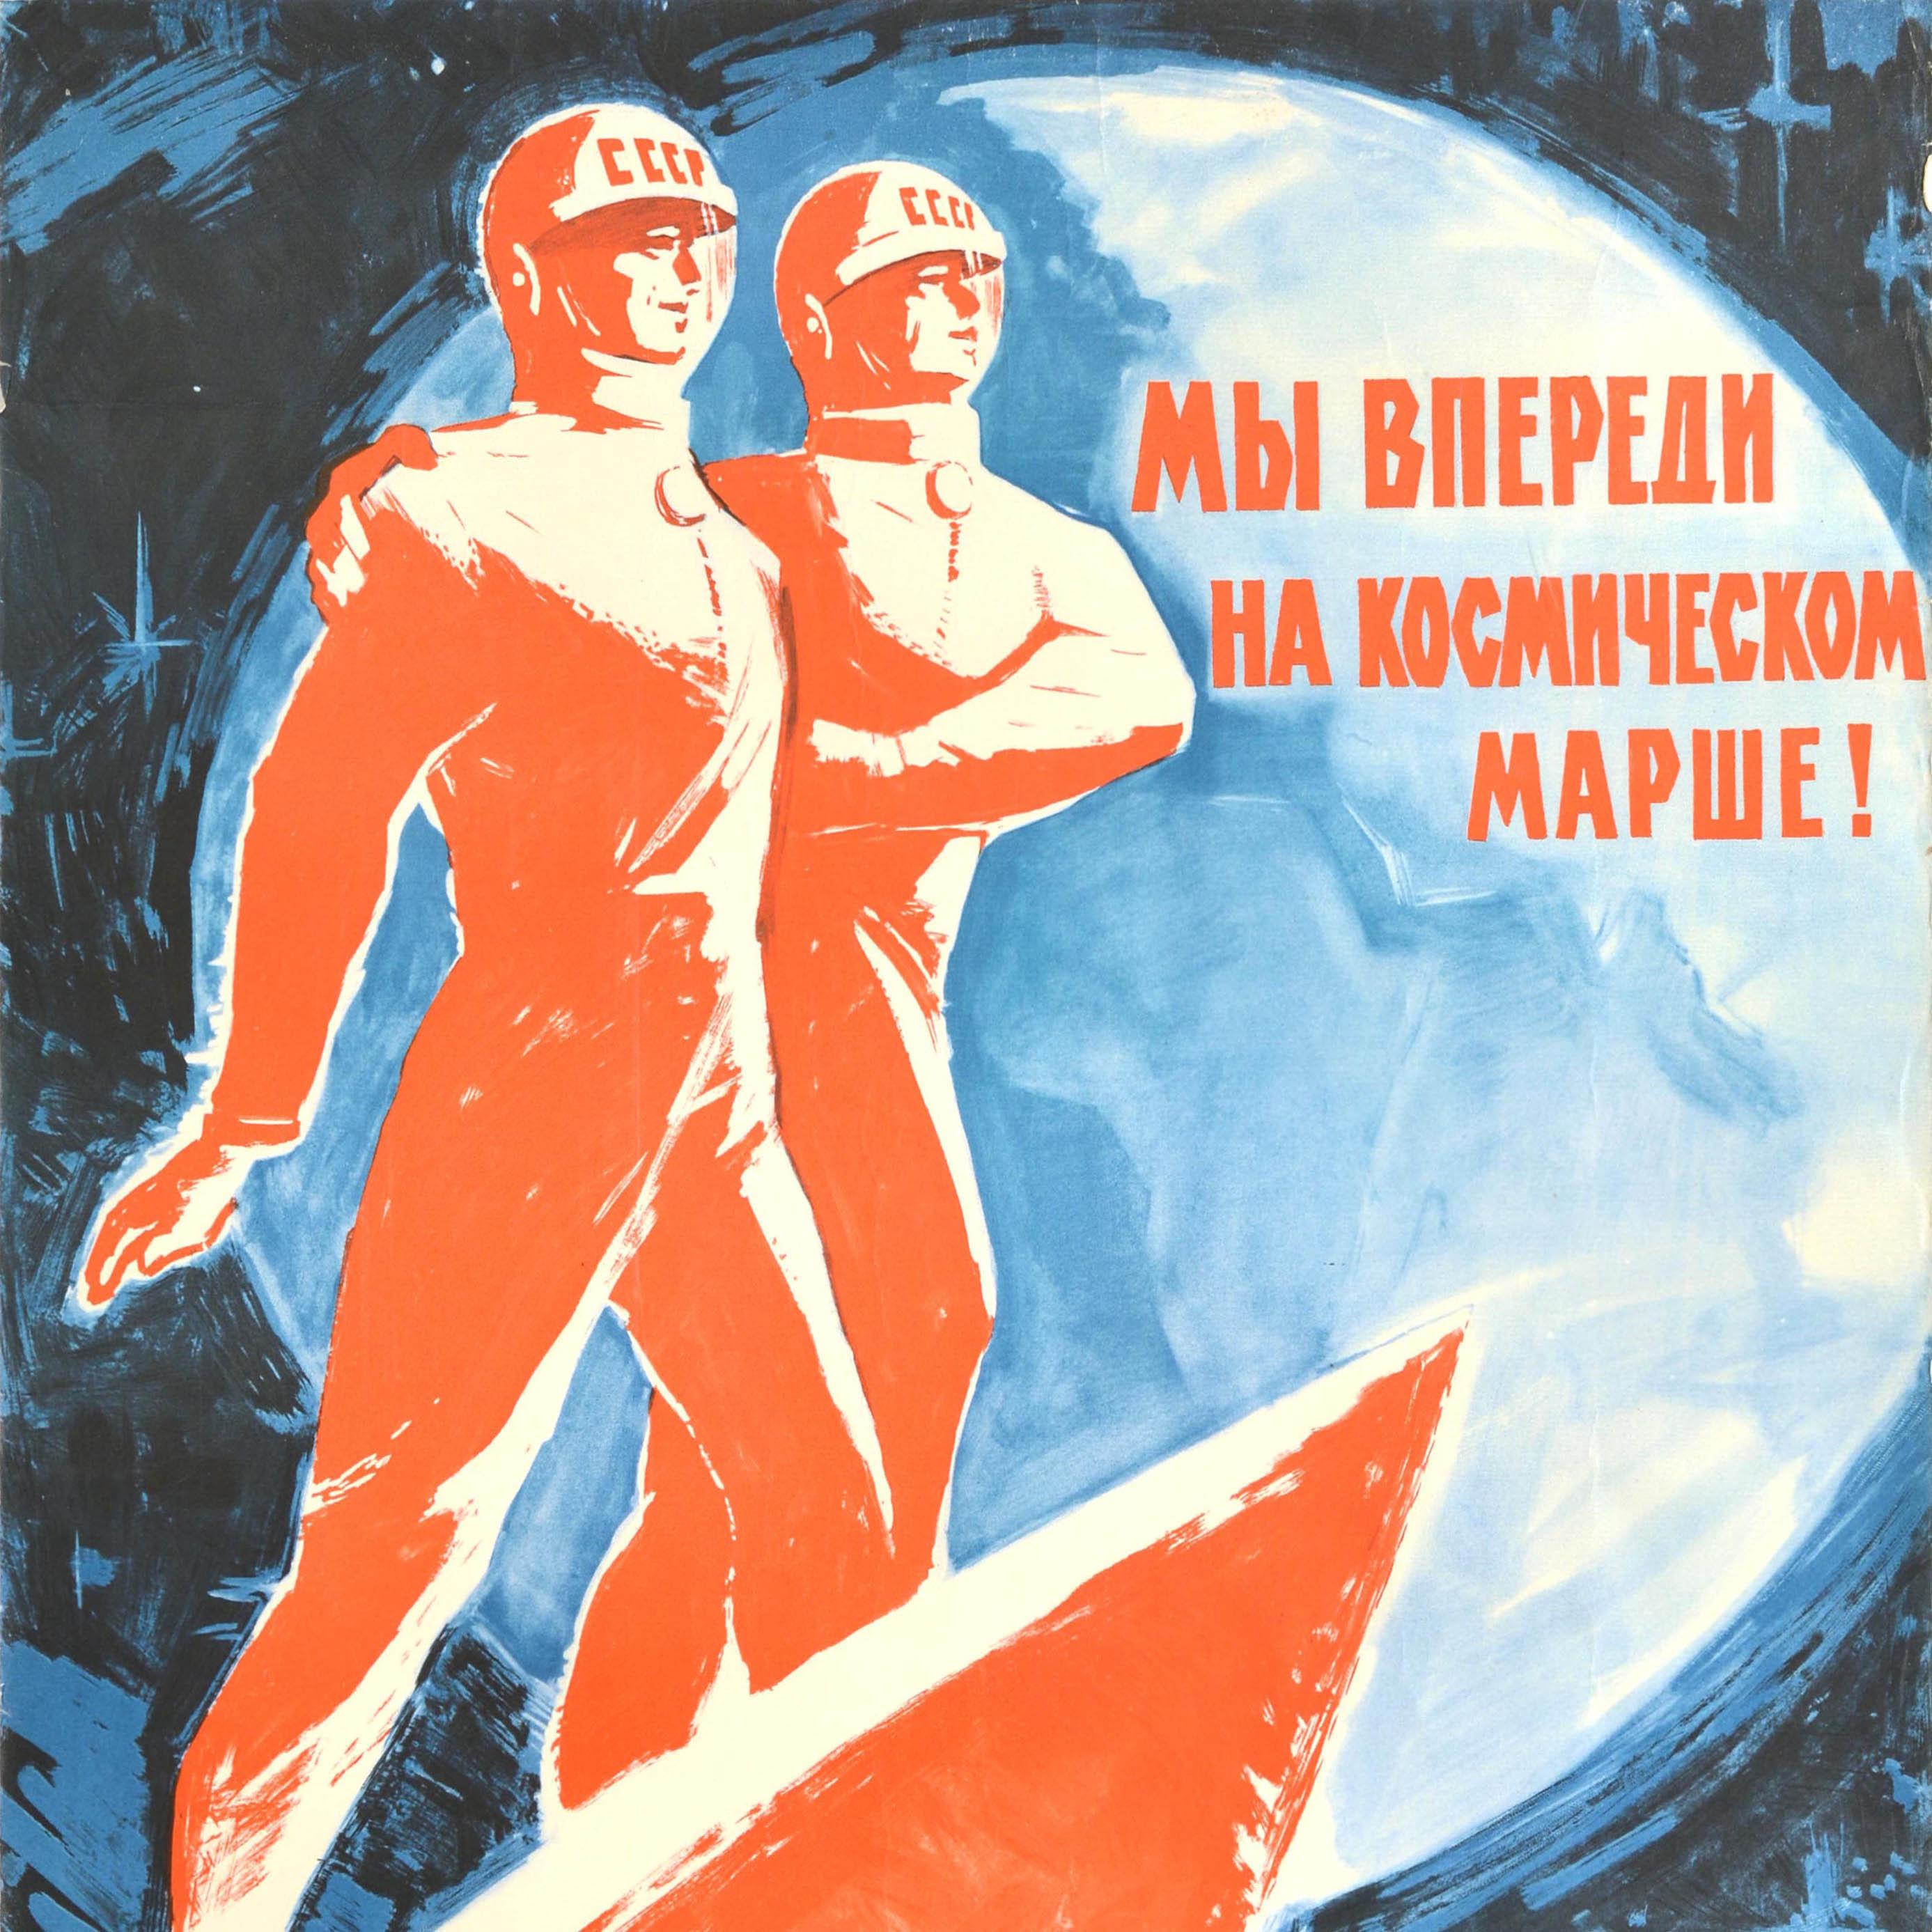 Originales sowjetisches Propagandaplakat für das Weltraumrennen - Wir sind auf dem Weltraummarsch voraus! - mit einem dynamischen Bild von zwei Kosmonauten mit CCCP / UdSSR auf ihren Helmen, die auf einer Voskhod 2 Rakete mit einem Planeten vor